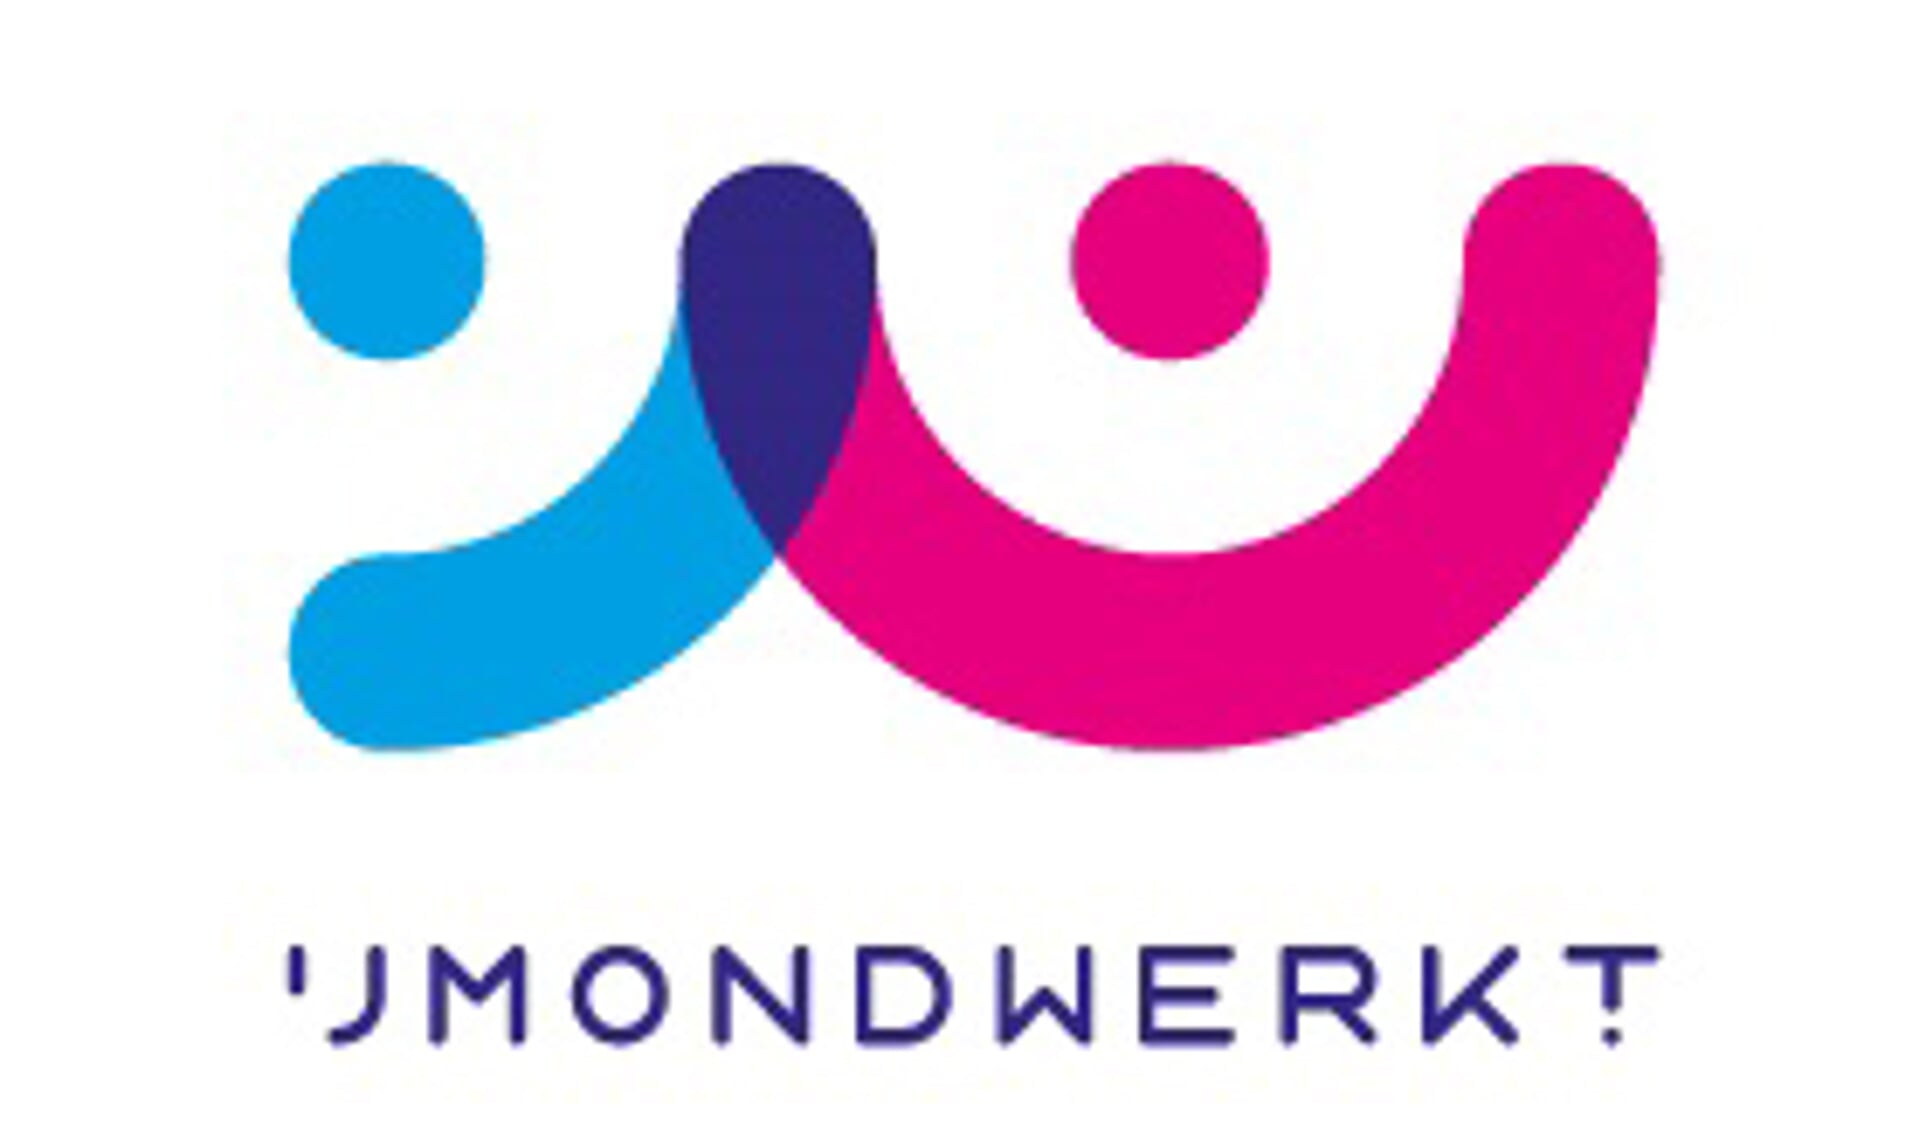 Het logo van IJmond Werkt!